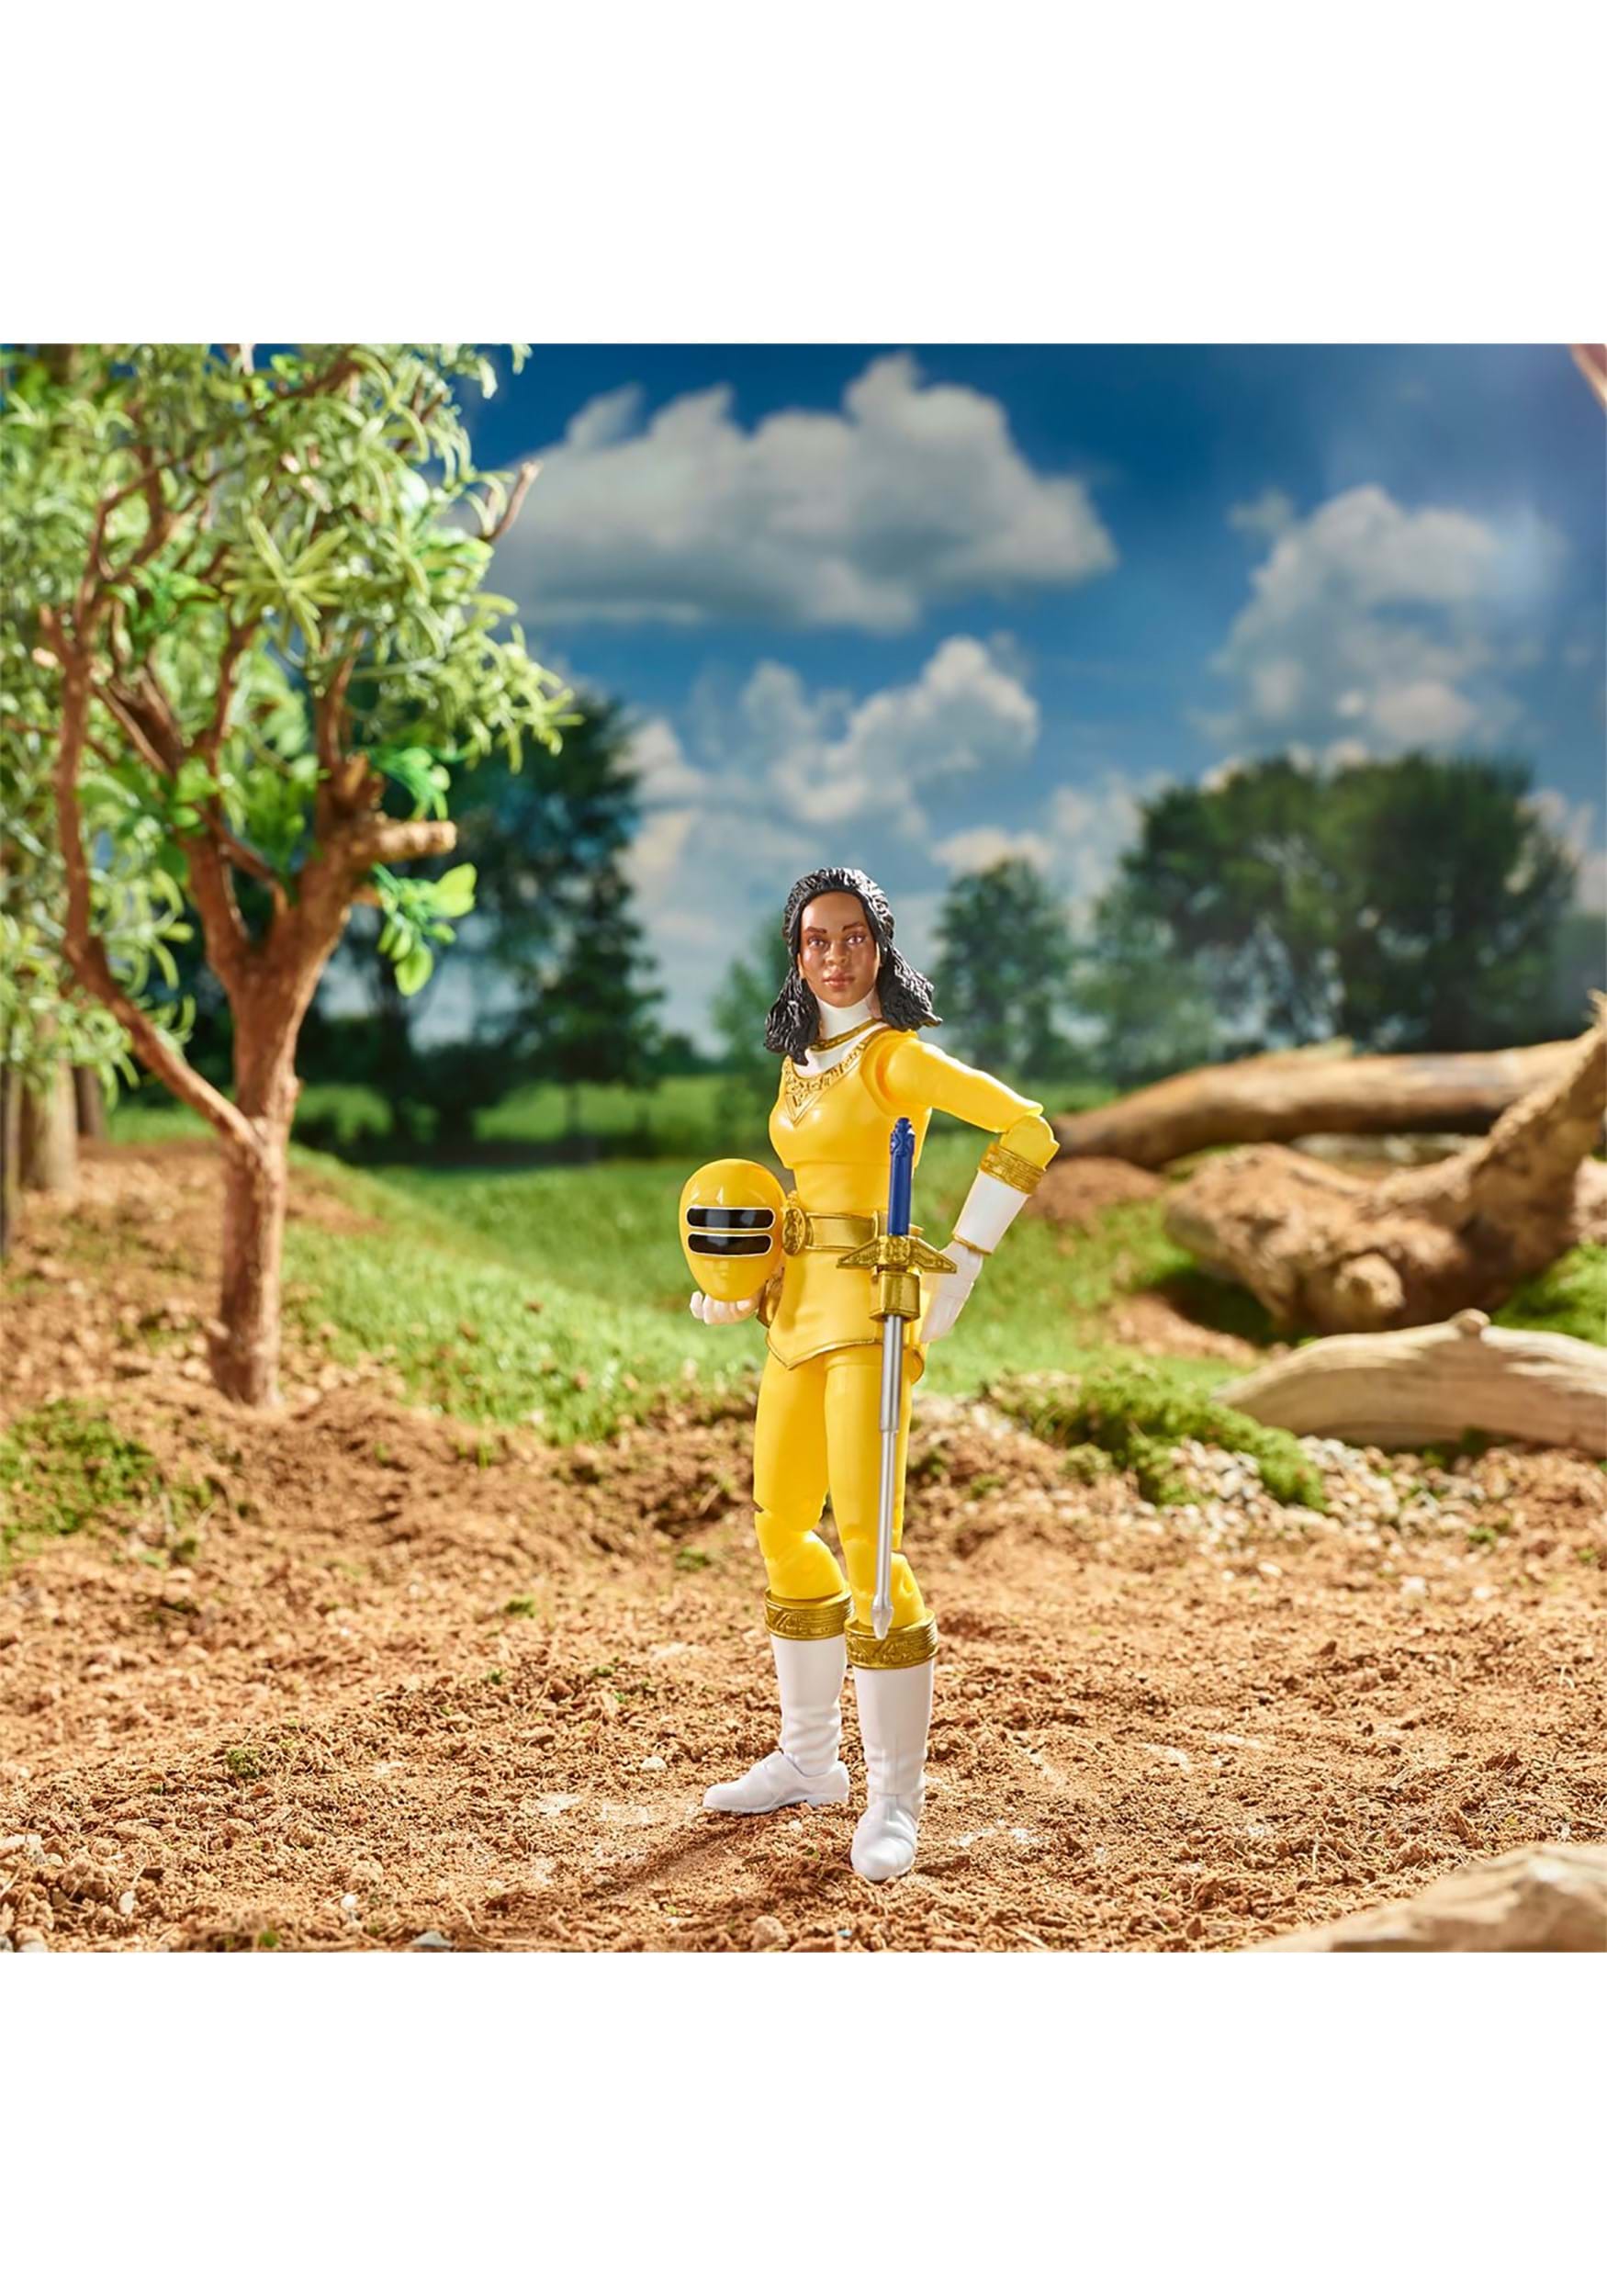 Power Rangers Zeo Yellow Ranger Action Figure